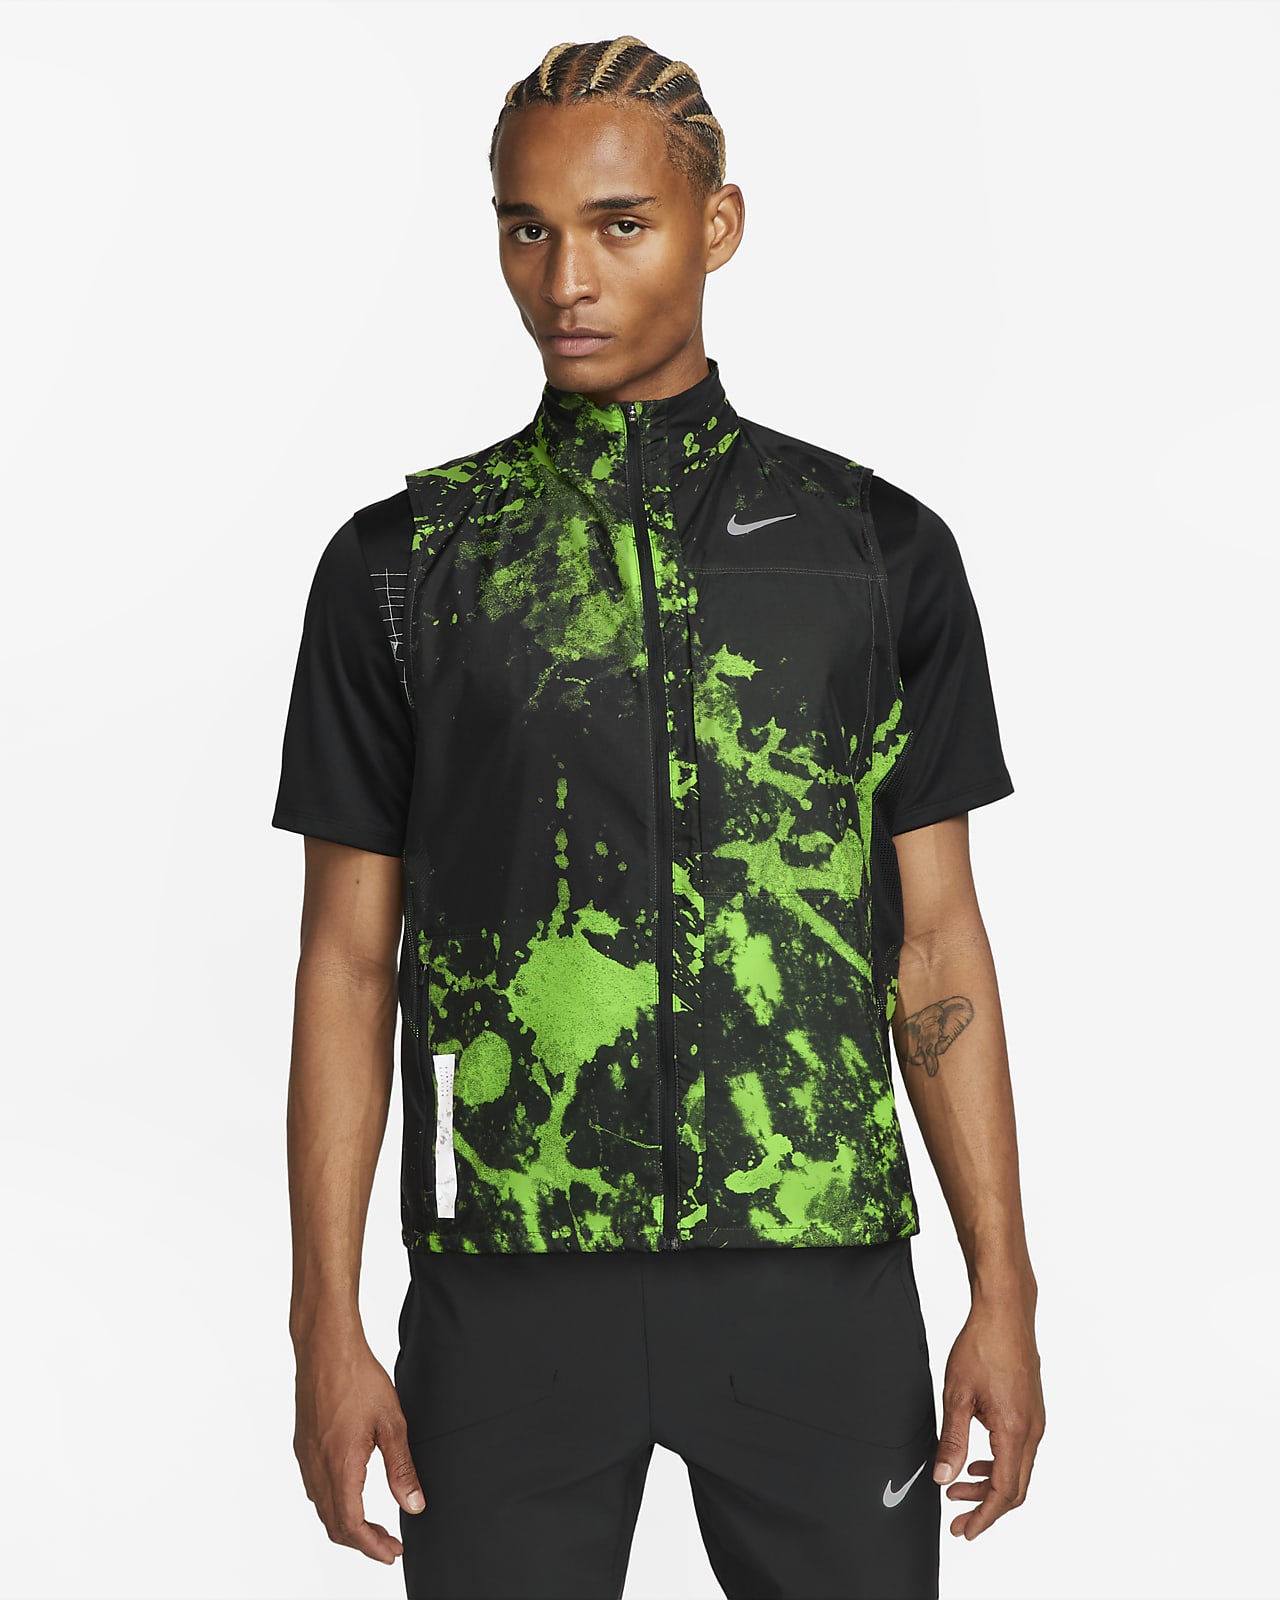 Nike Repel Run Division férfi futómellény